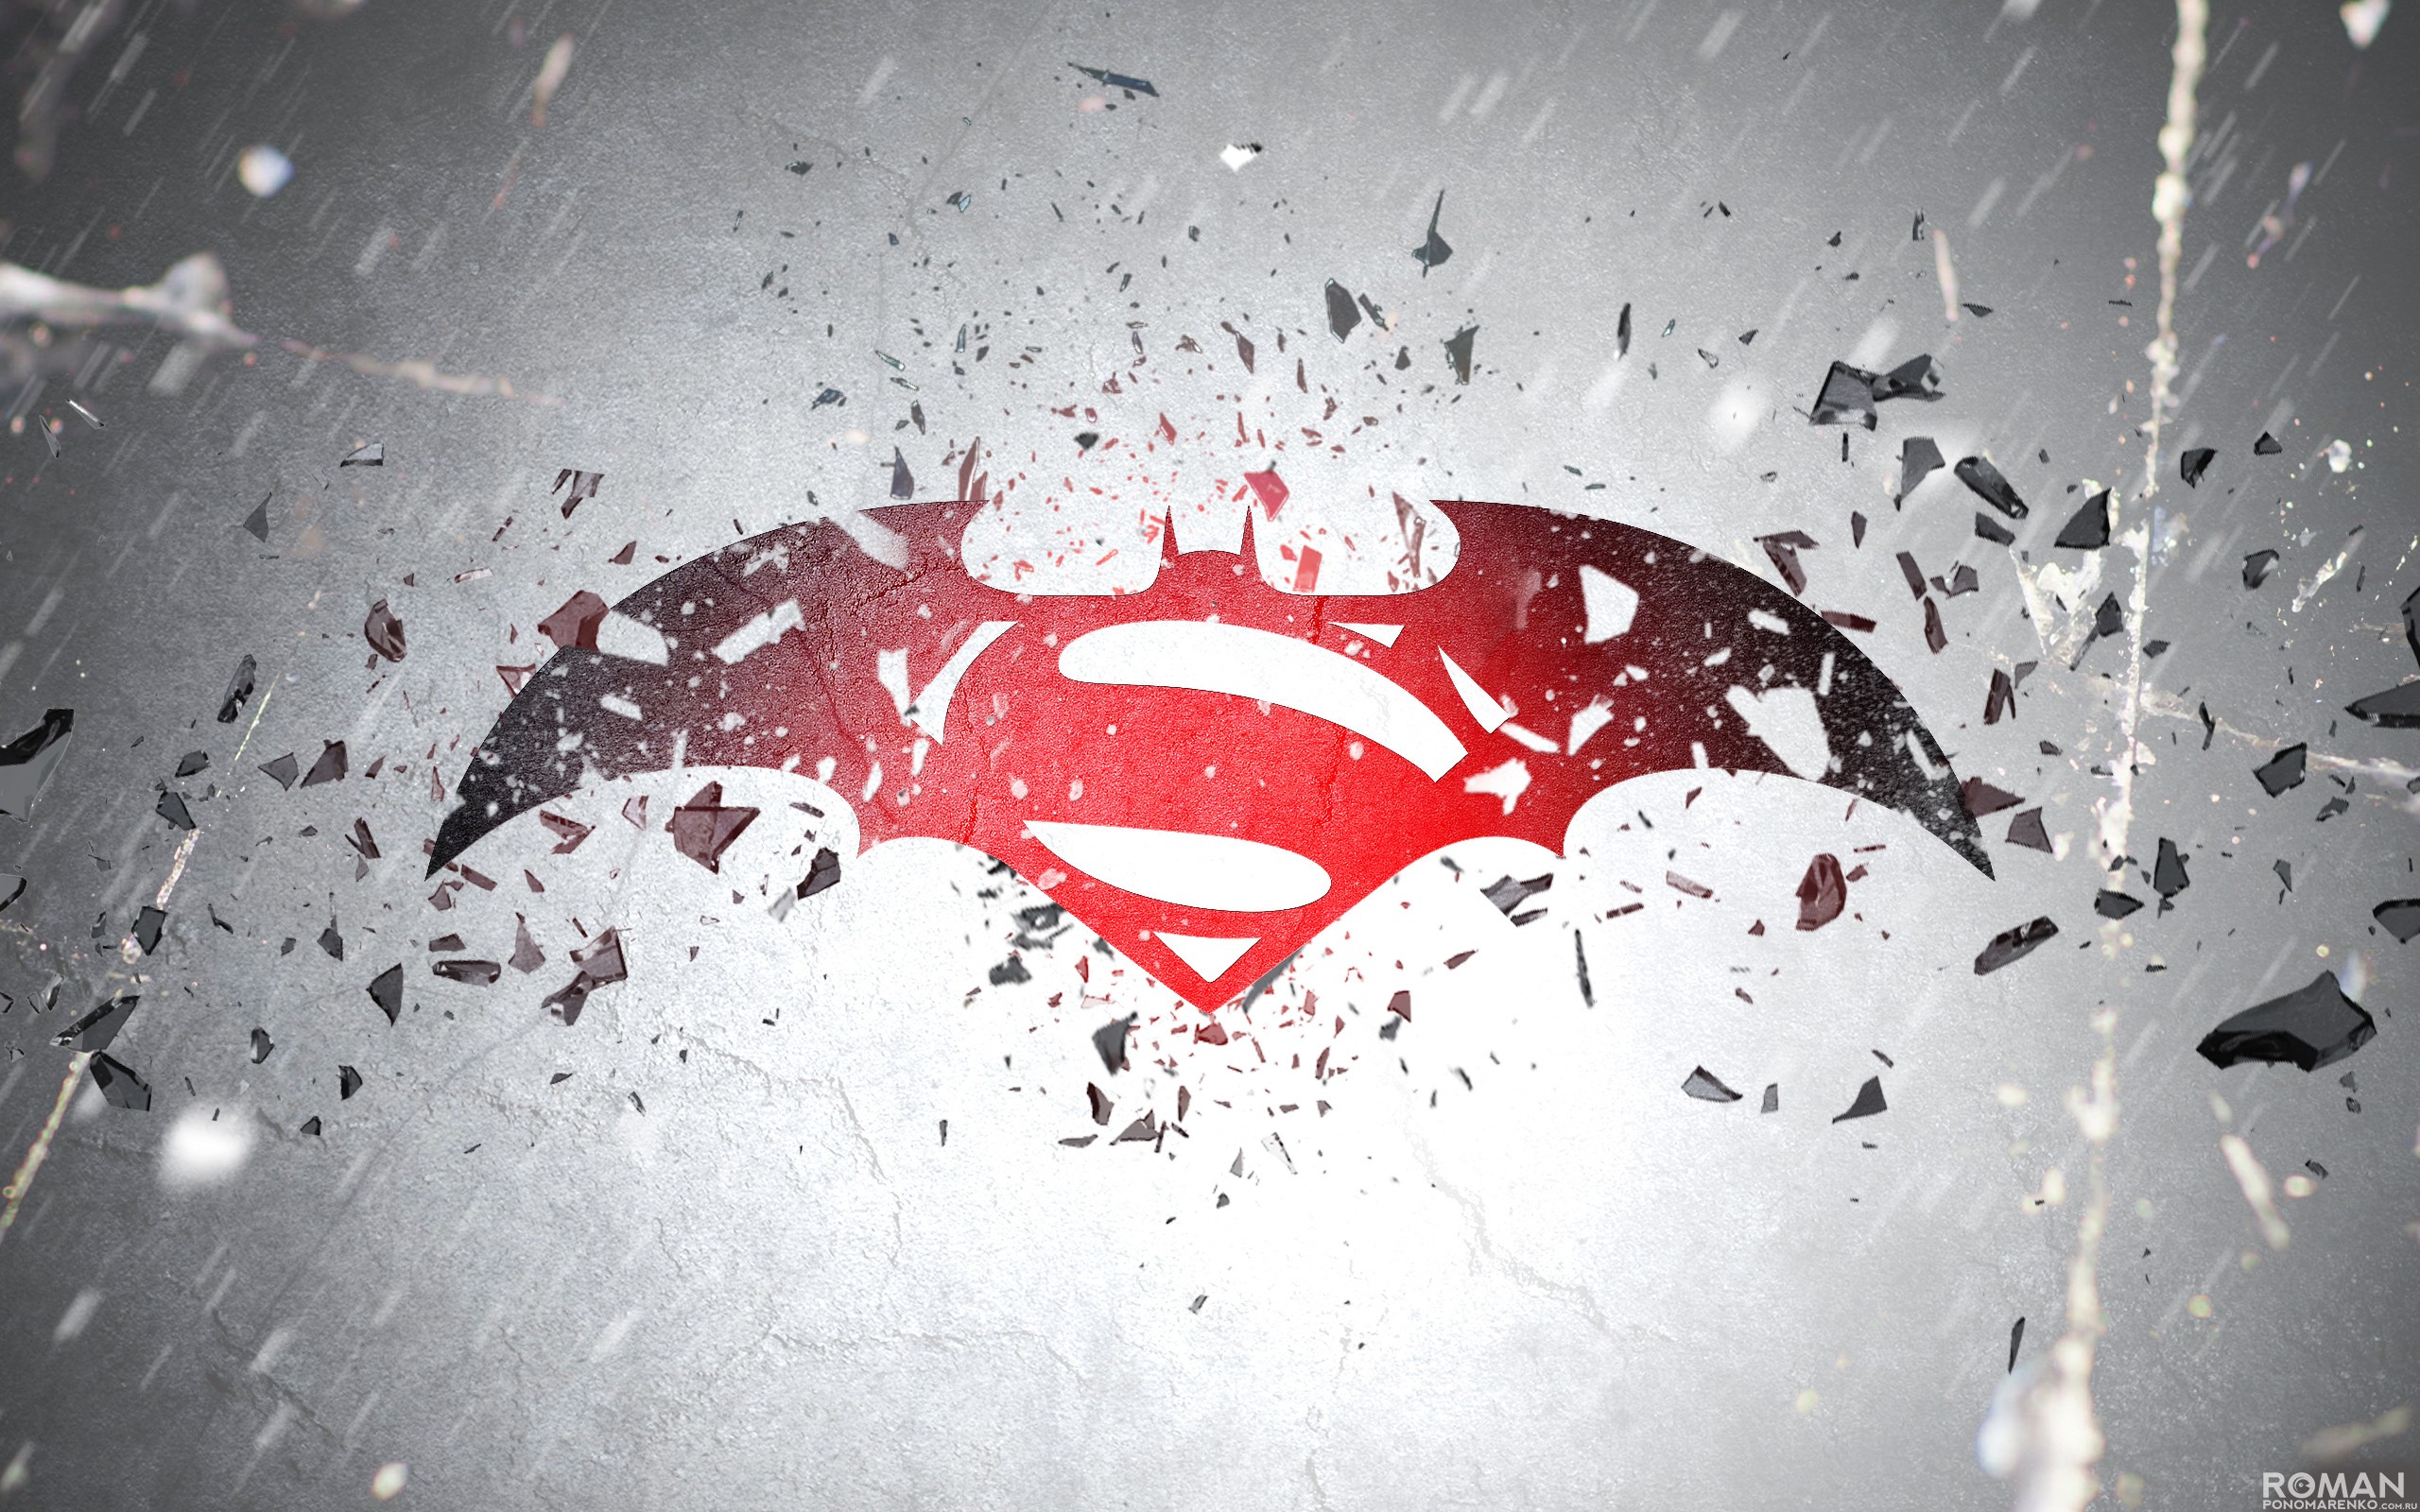 General 2560x1600 Batman Superman Batman v Superman: Dawn of Justice artwork movies logo superhero DC Comics